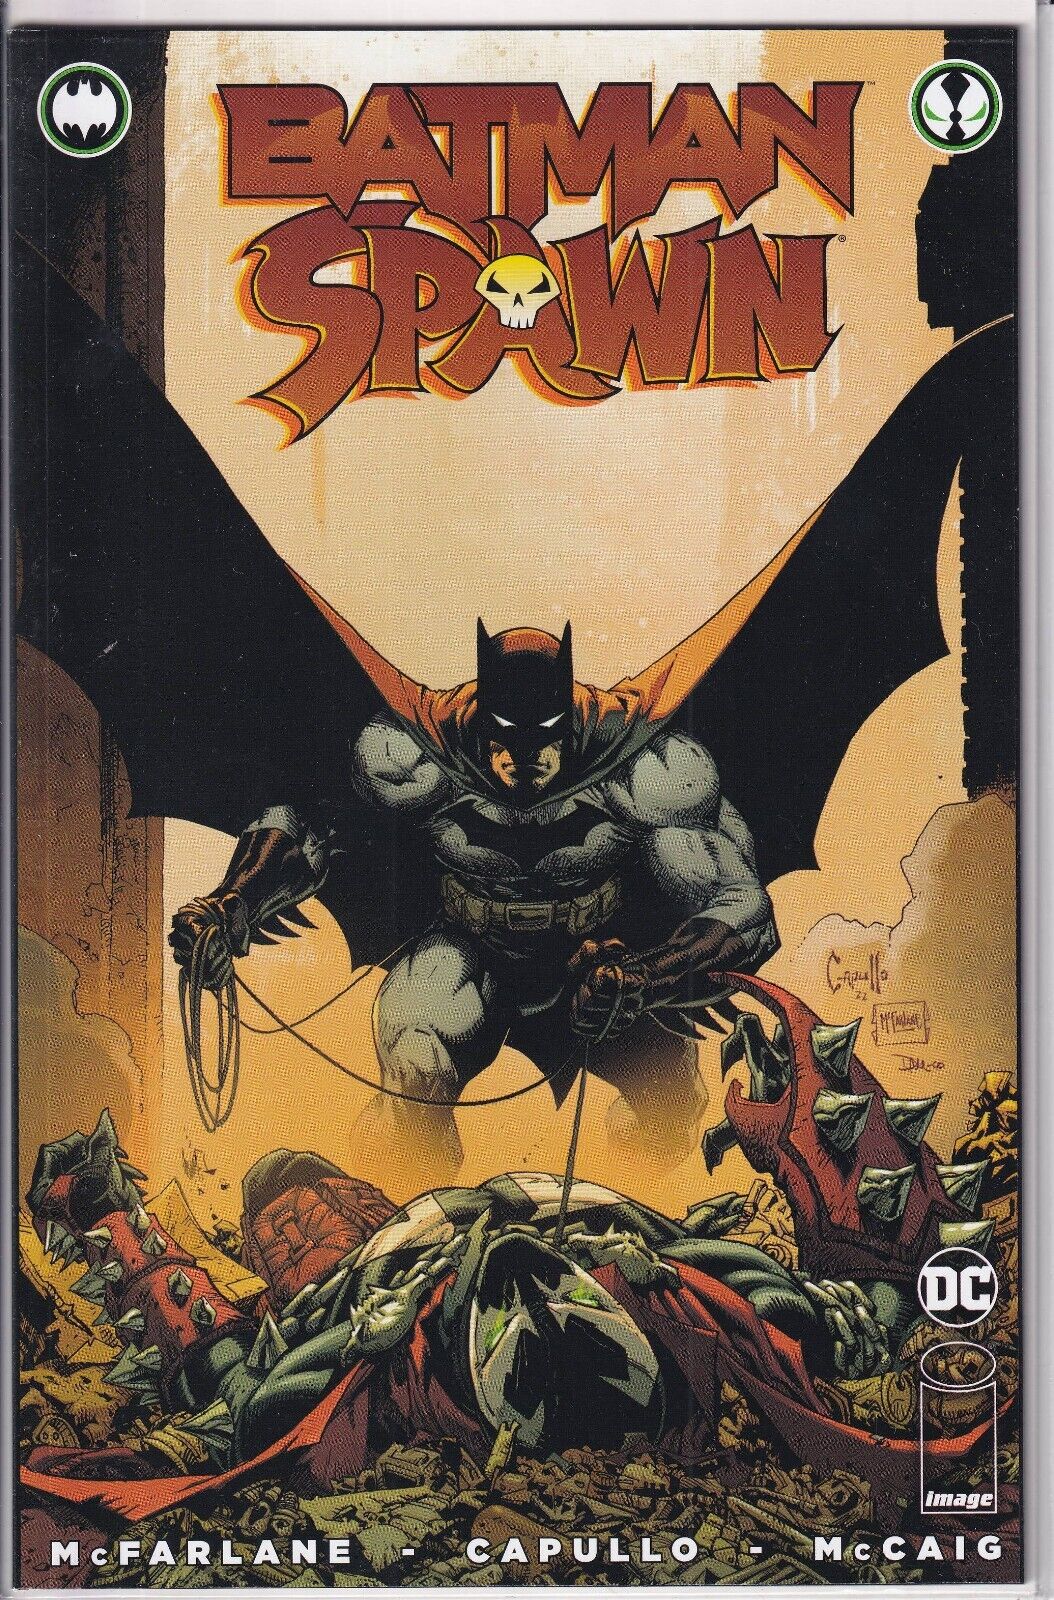 37498: DC Comics BATMAN SPAWN #1 NM Grade